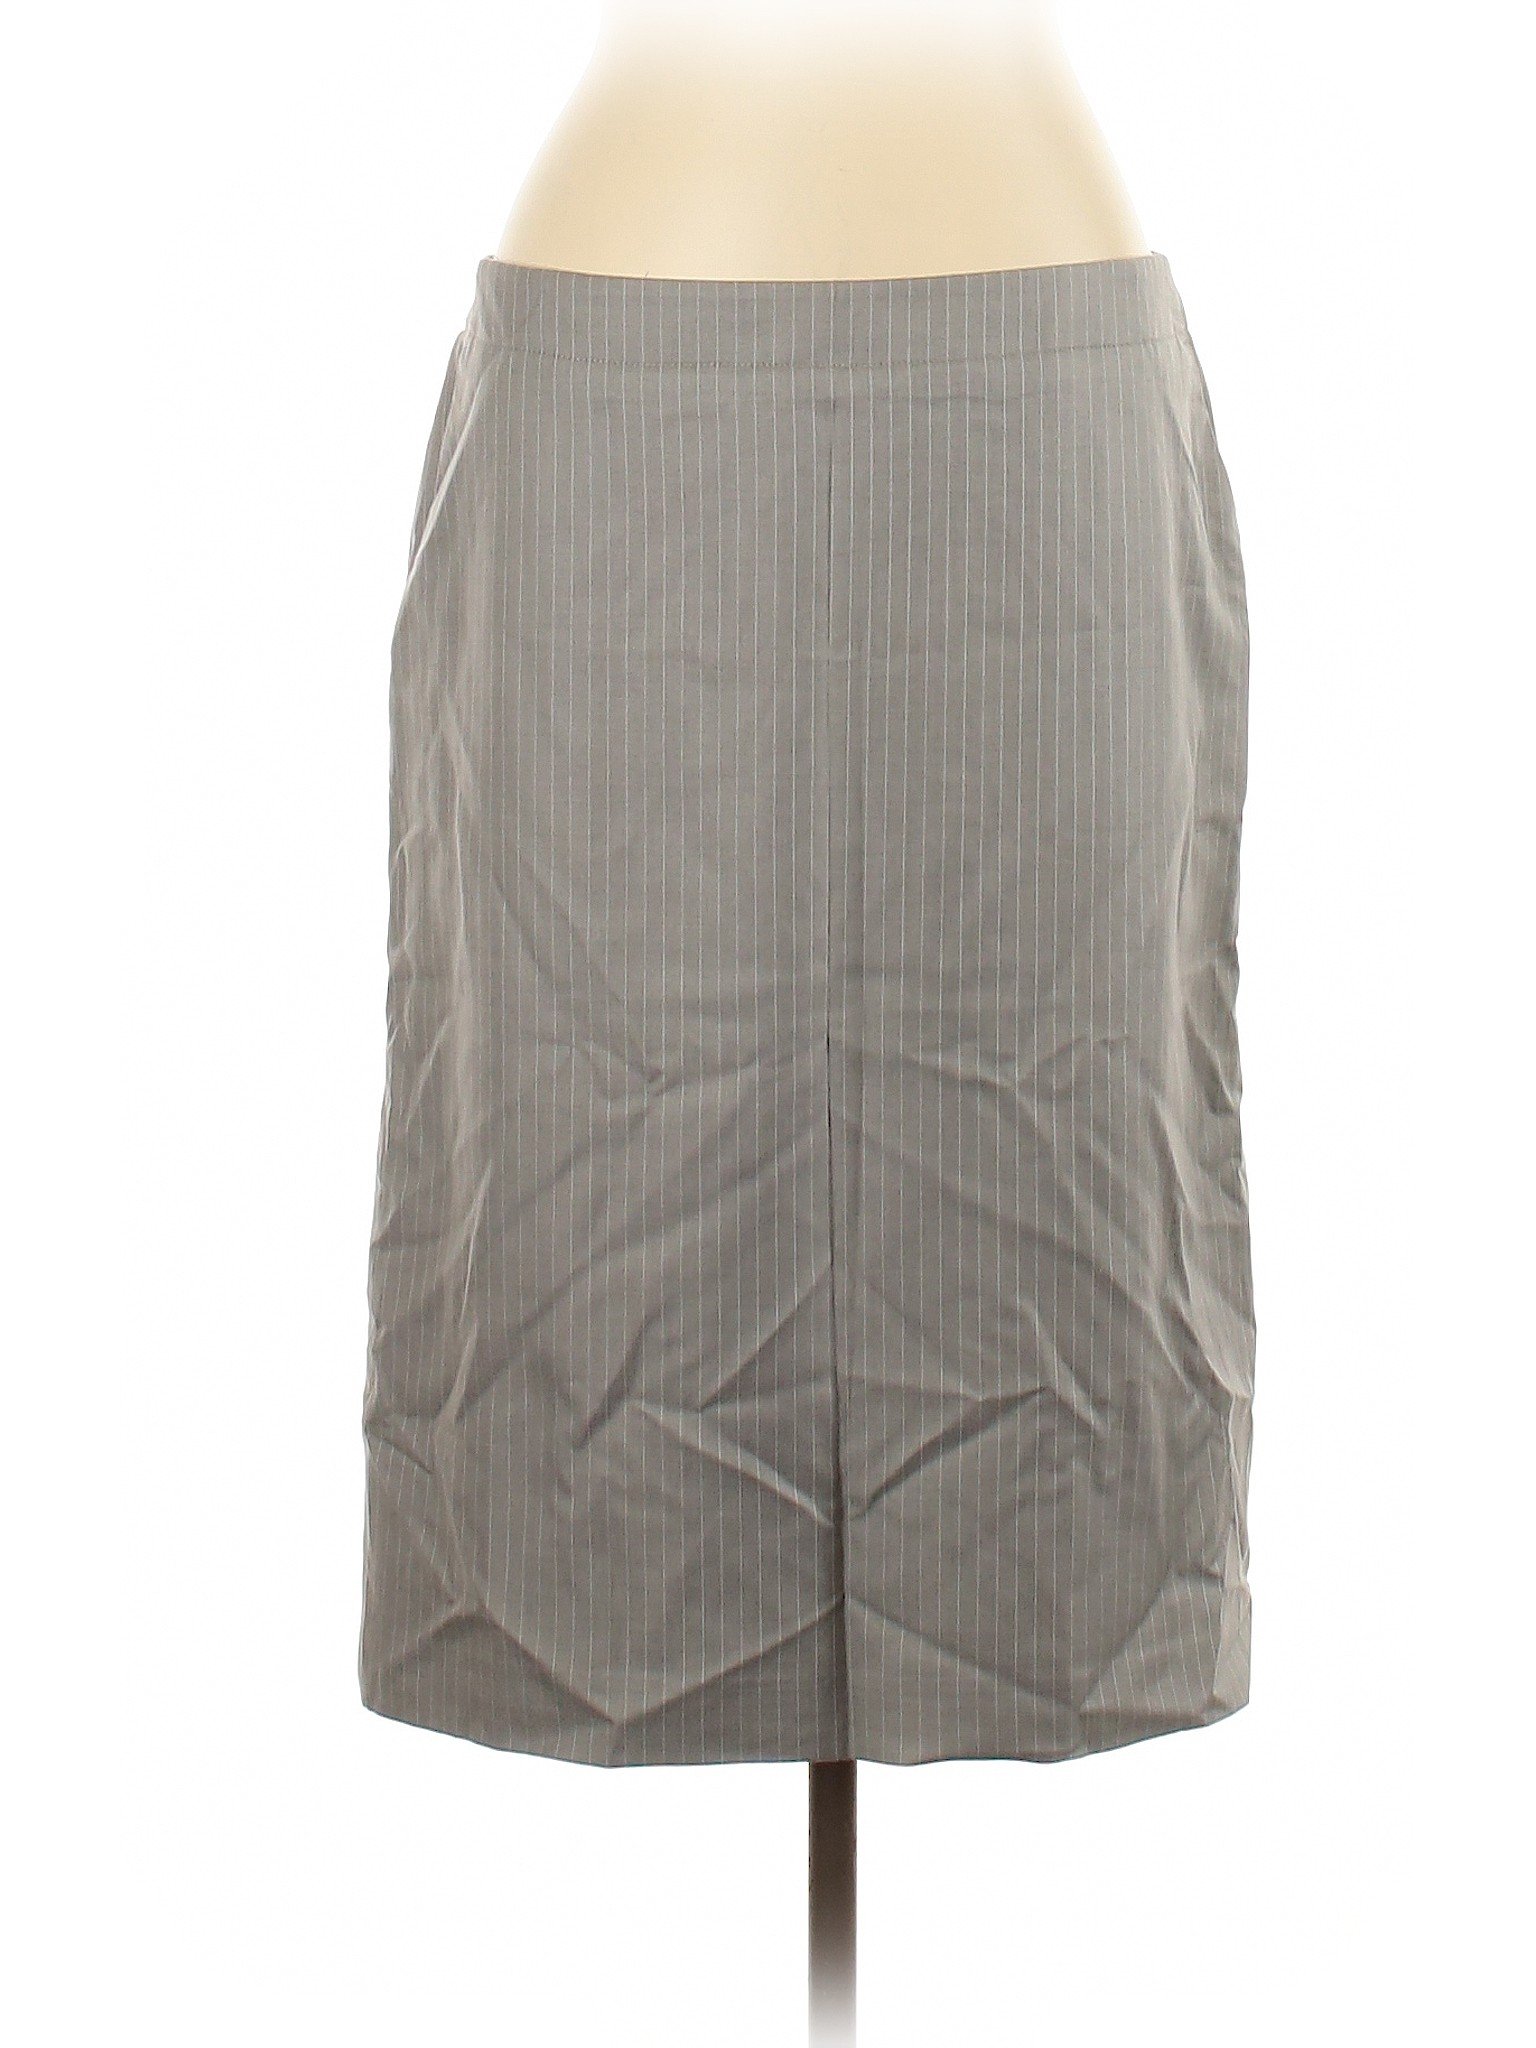 Banana Republic Women Gray Wool Skirt 14 | eBay